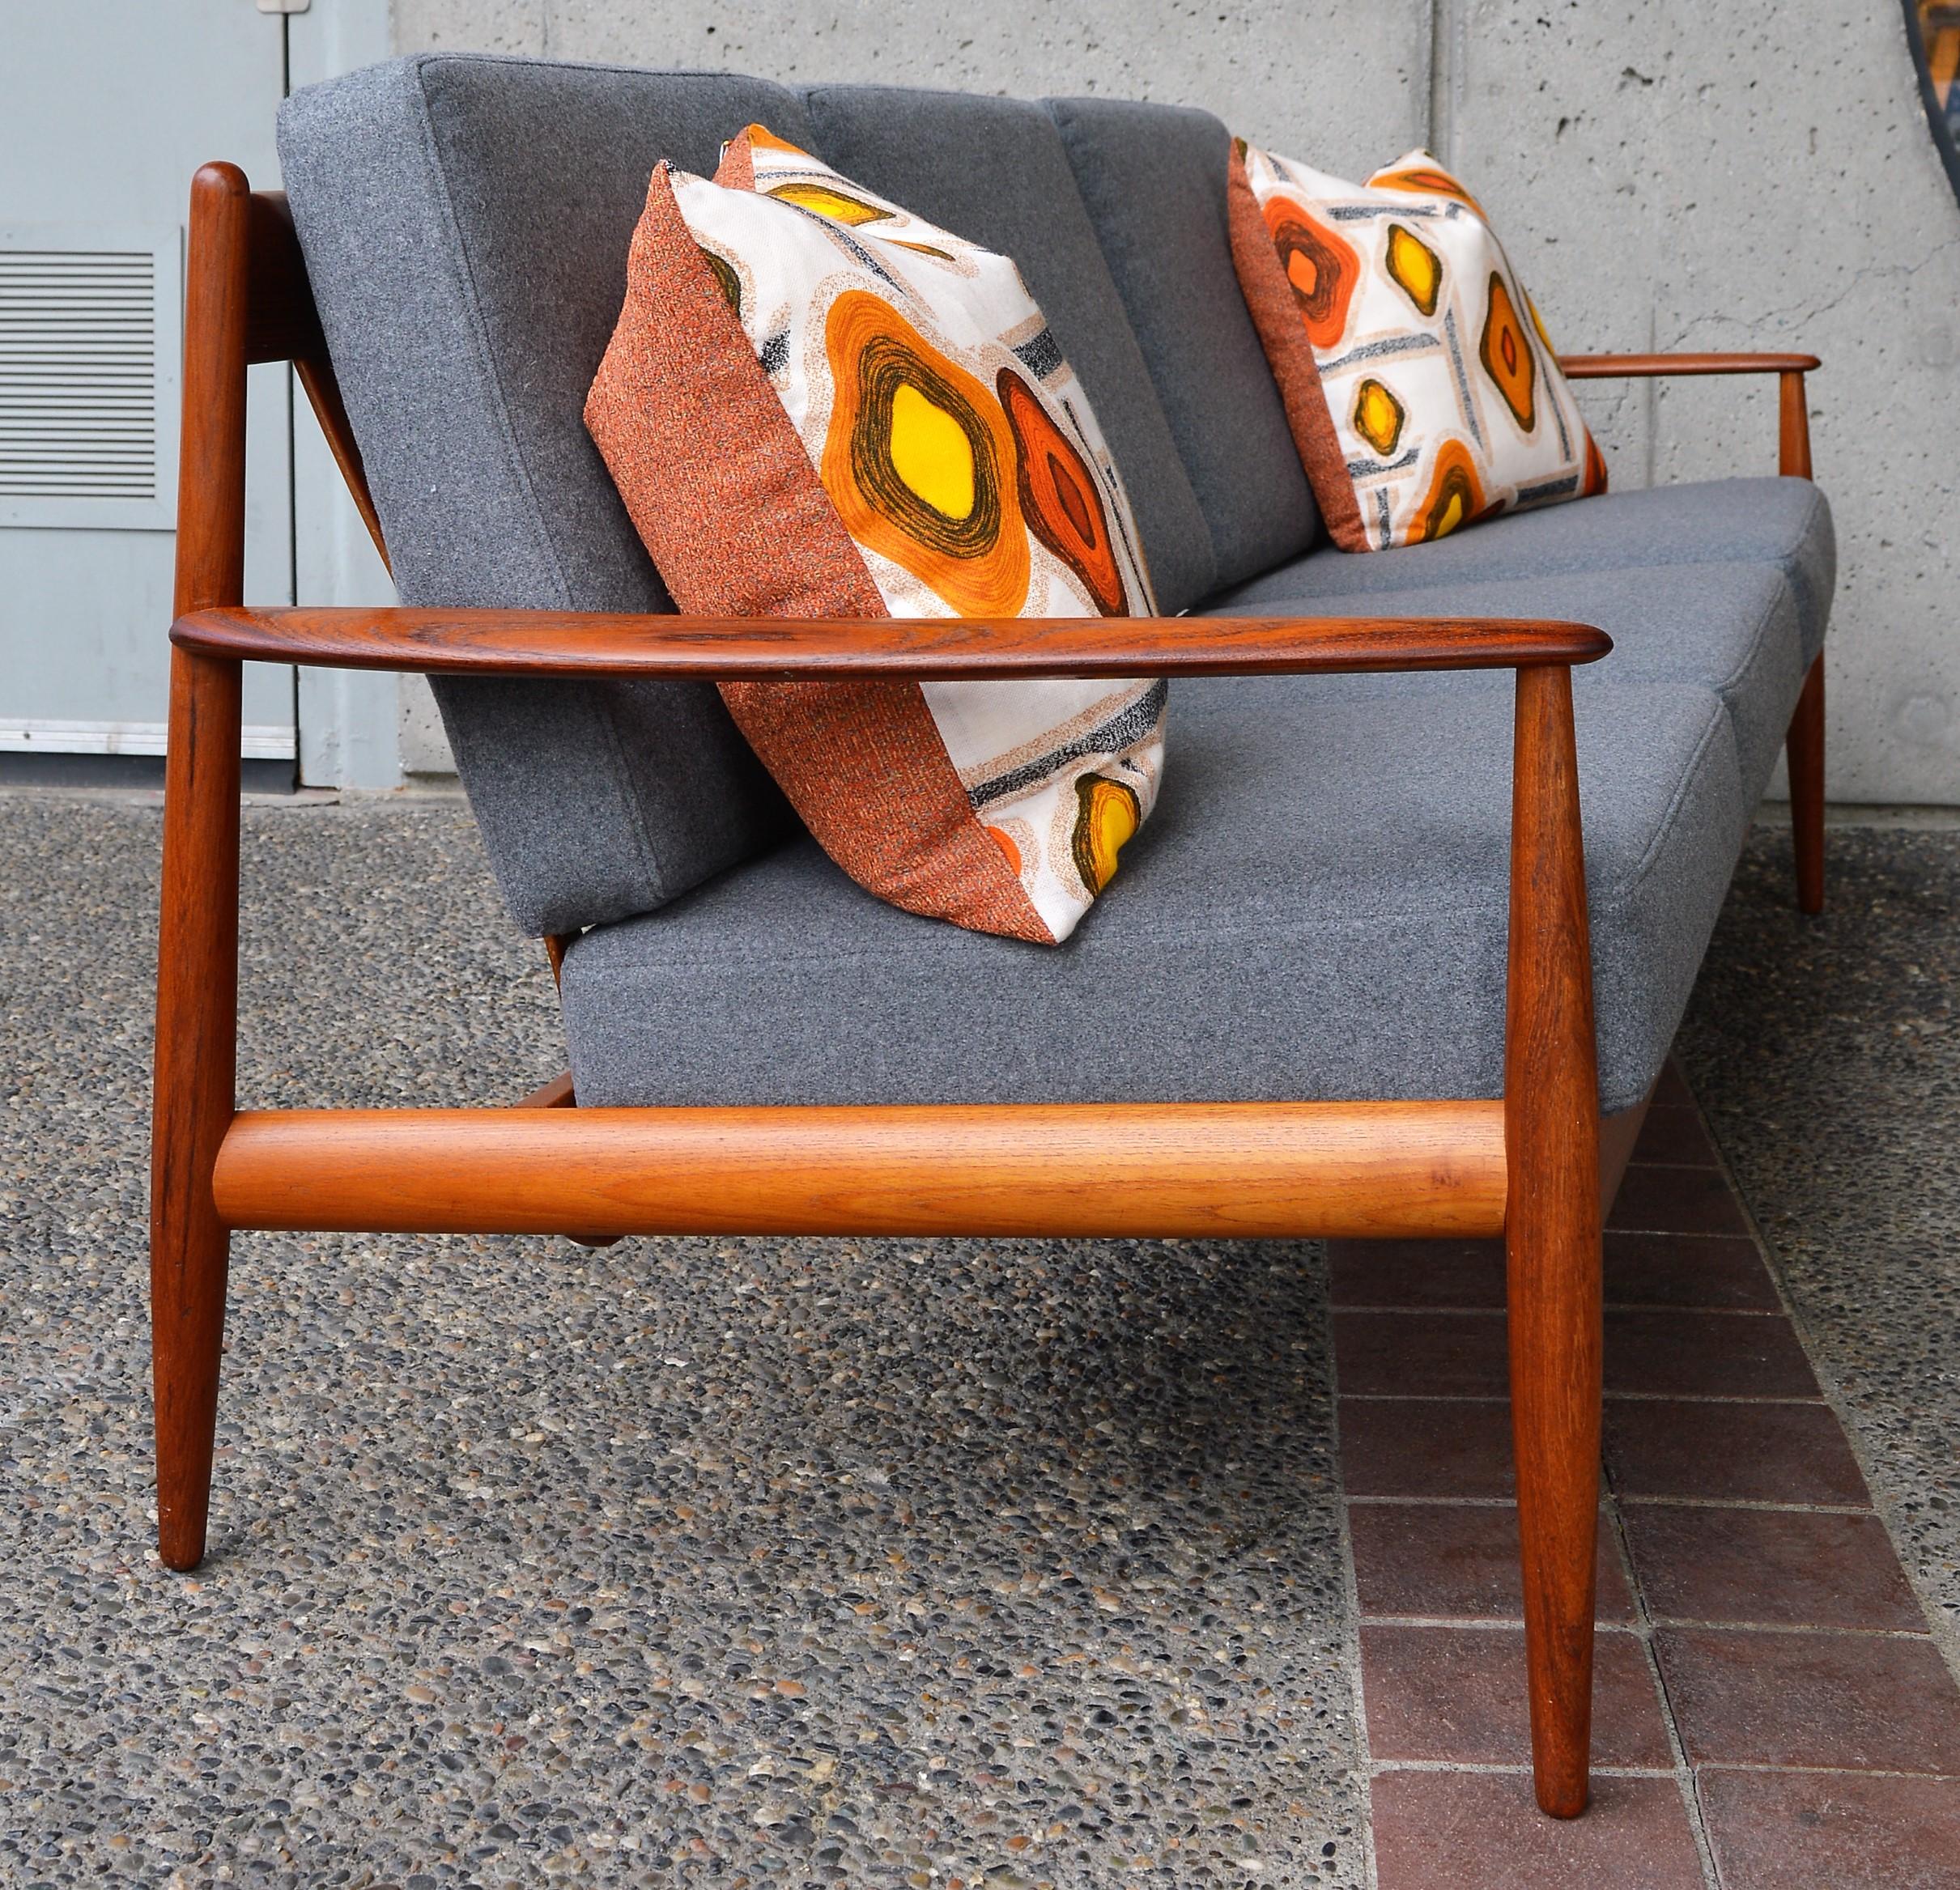 Upholstery Ultimate Grete Jalk Sofa, Restored, All Teak Frame, Thin Back Slats, 1960s